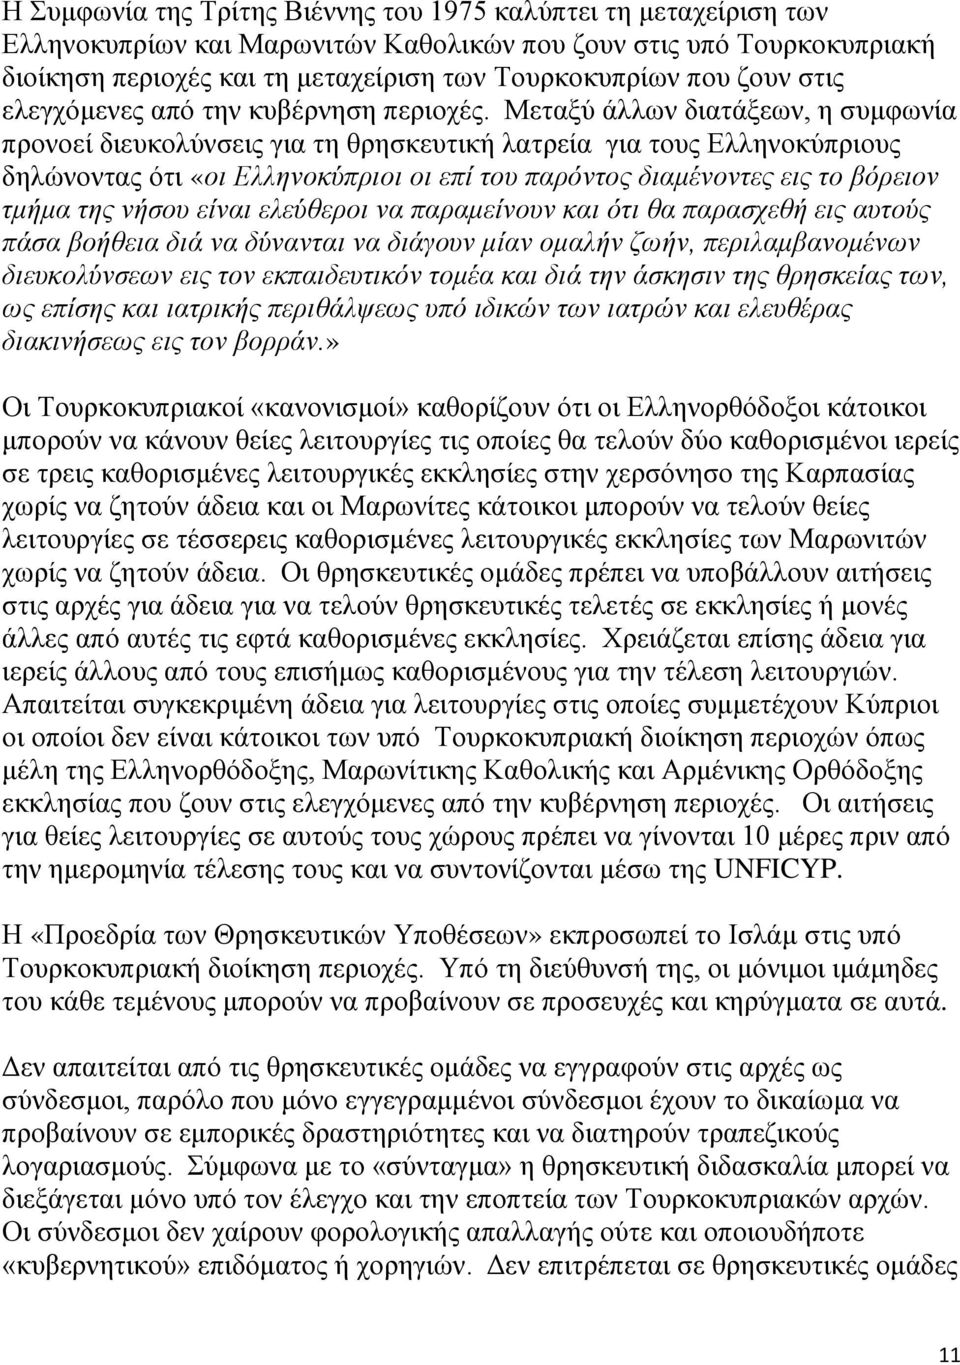 Μεταξύ άλλων διατάξεων, η συμφωνία προνοεί διευκολύνσεις για τη θρησκευτική λατρεία για τους Ελληνοκύπριους δηλώνοντας ότι «οι Ελληνοκύπριοι οι επί του παρόντος διαμένοντες εις το βόρειον τμήμα της